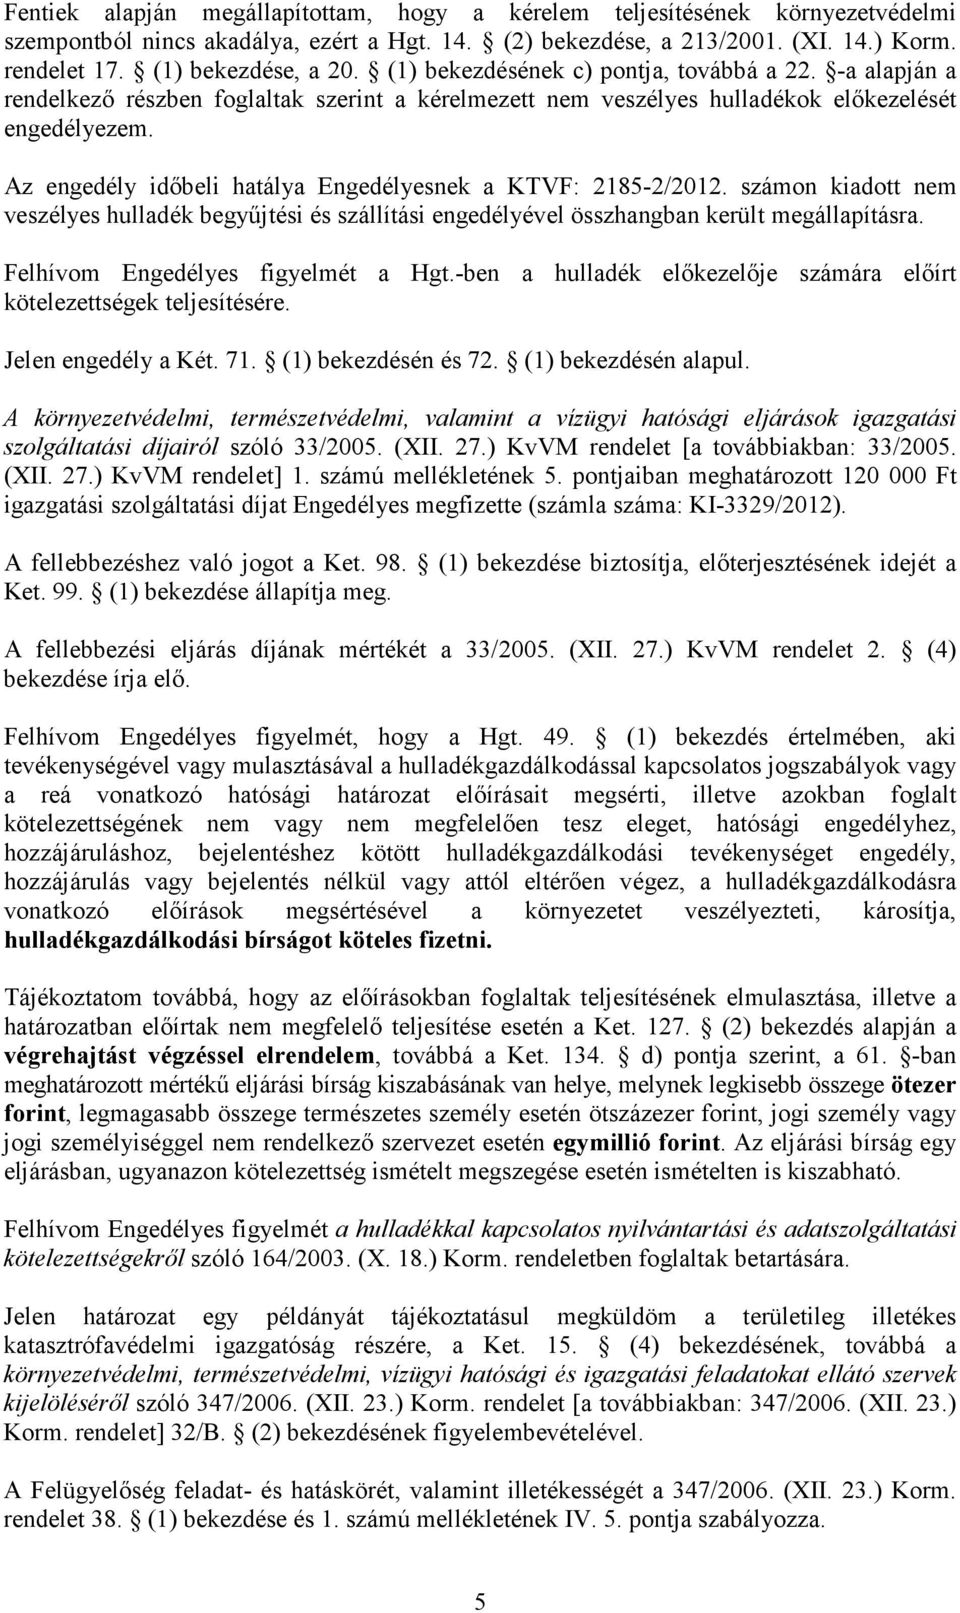 Az engedély idıbeli hatálya Engedélyesnek a KTVF: 2185-2/2012. számon kiadott nem veszélyes hulladék begyőjtési és szállítási engedélyével összhangban került megállapításra.